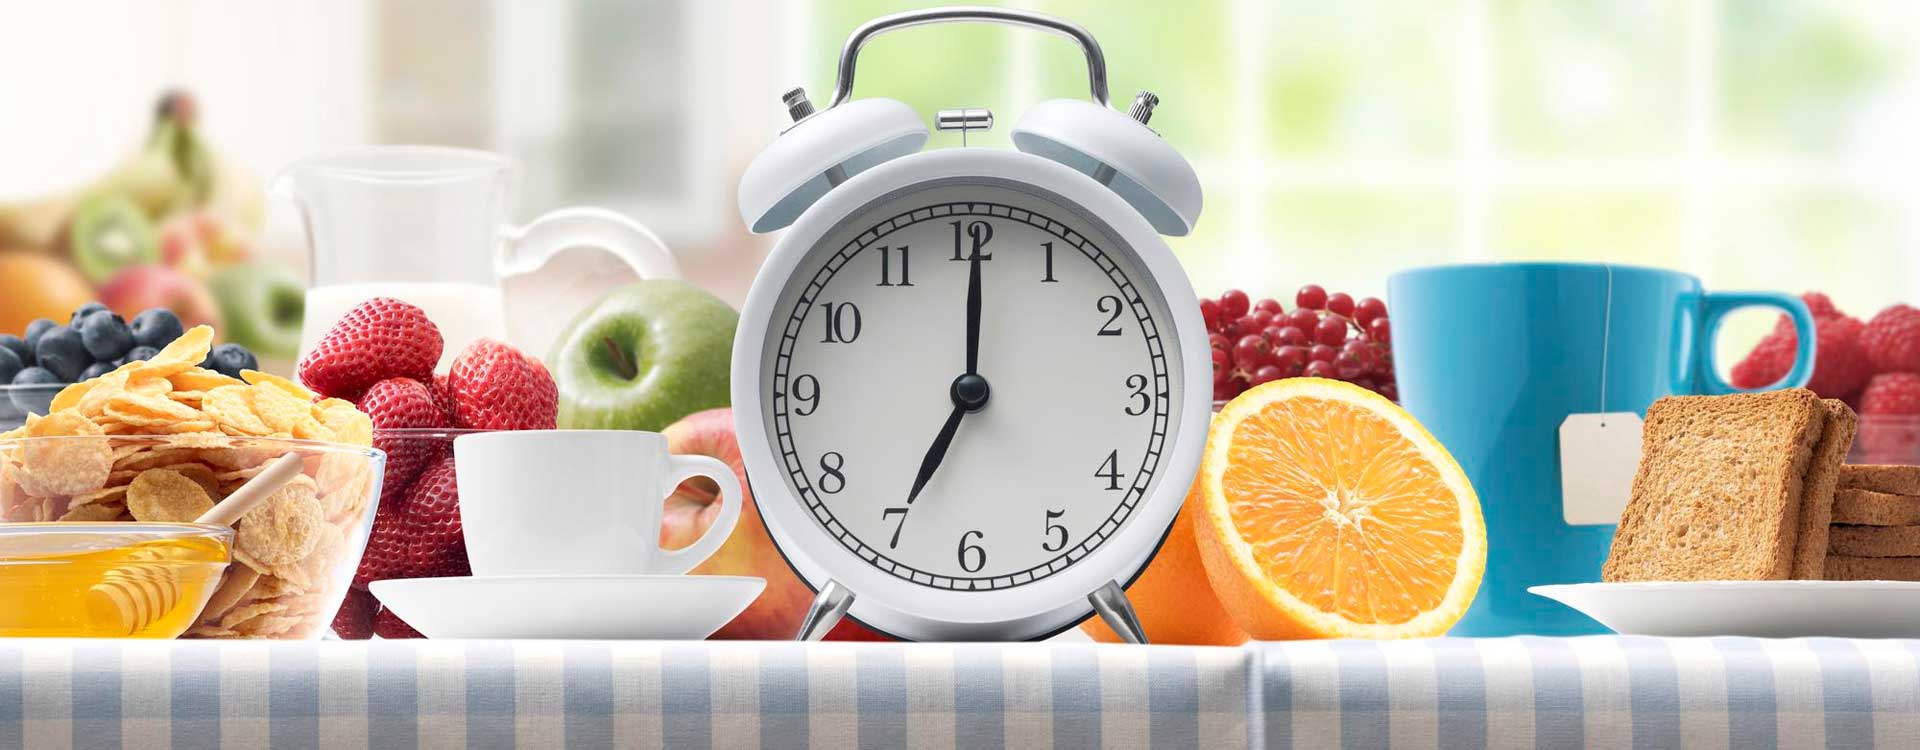 Intervallfasten – Frühstück und Wecker der 7 Uhr anzeigt